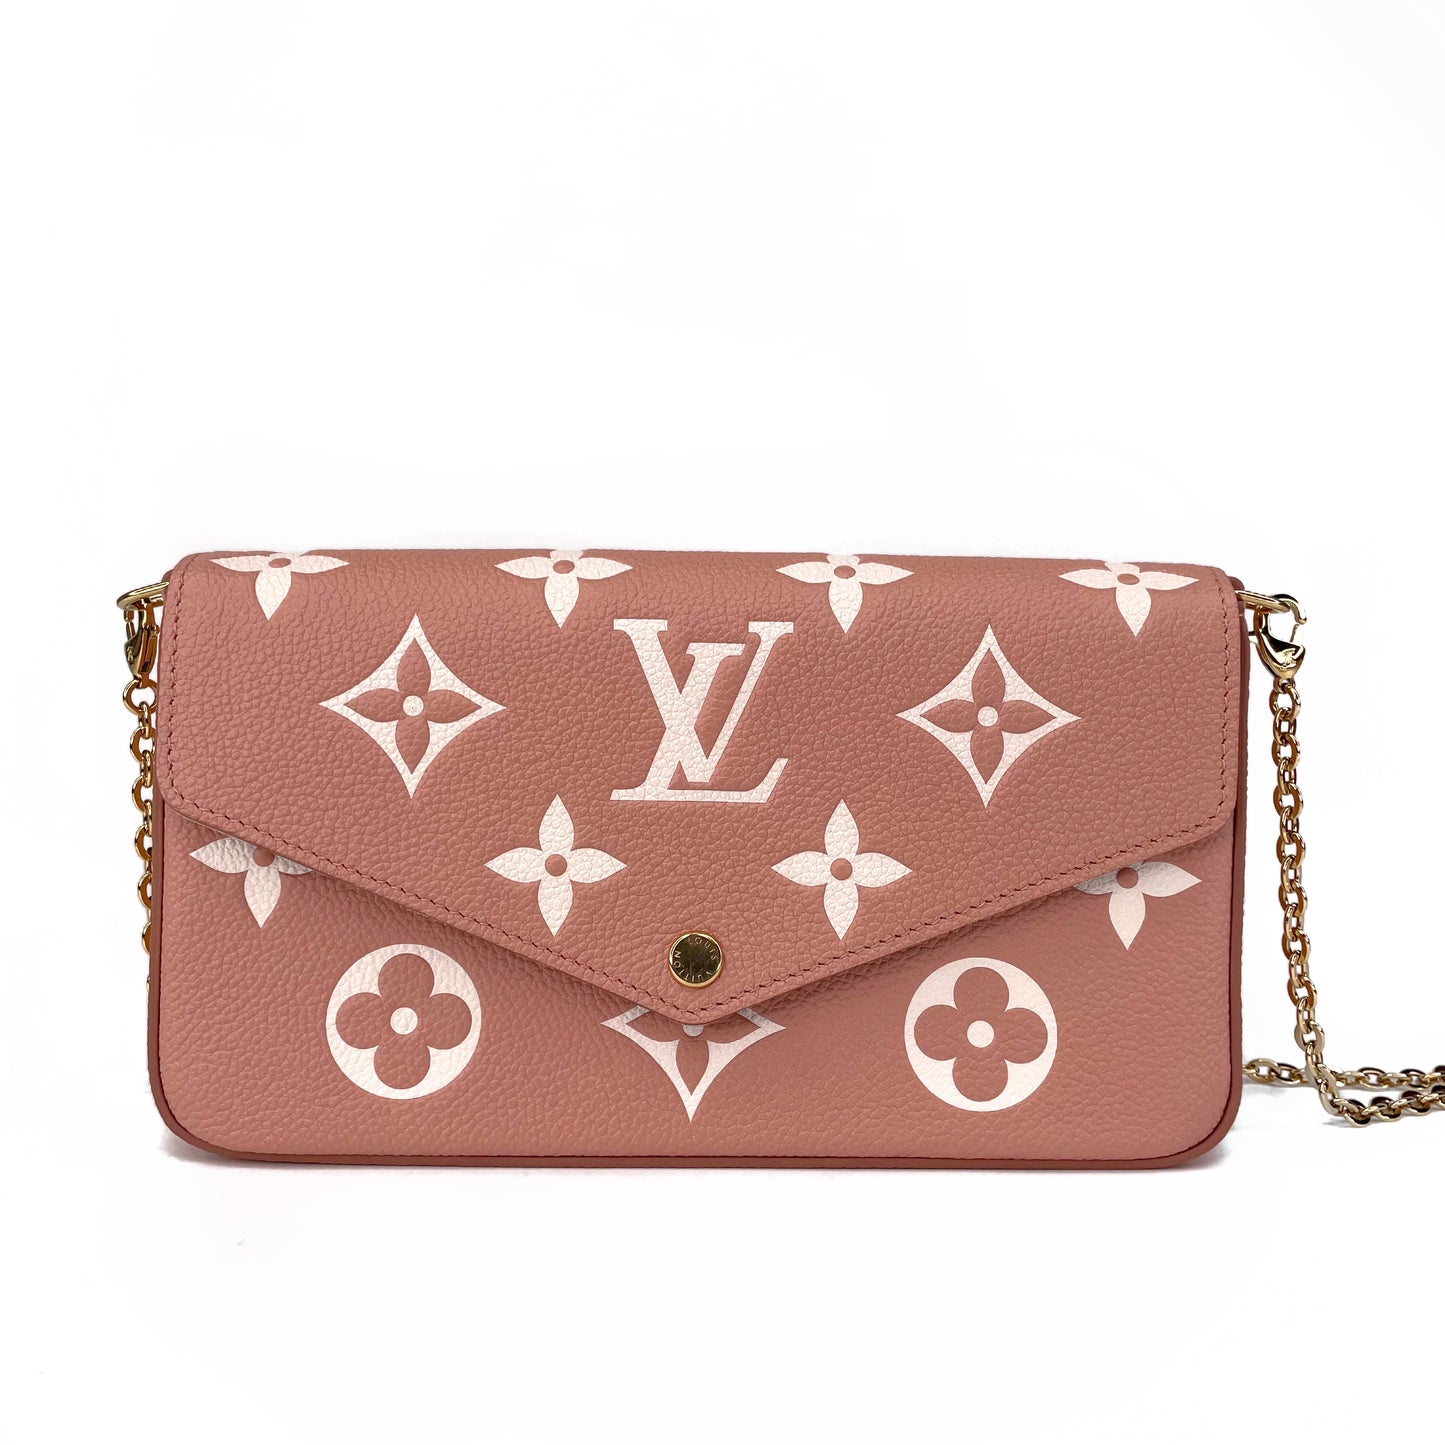 Louis Vuitton Felicie Bag